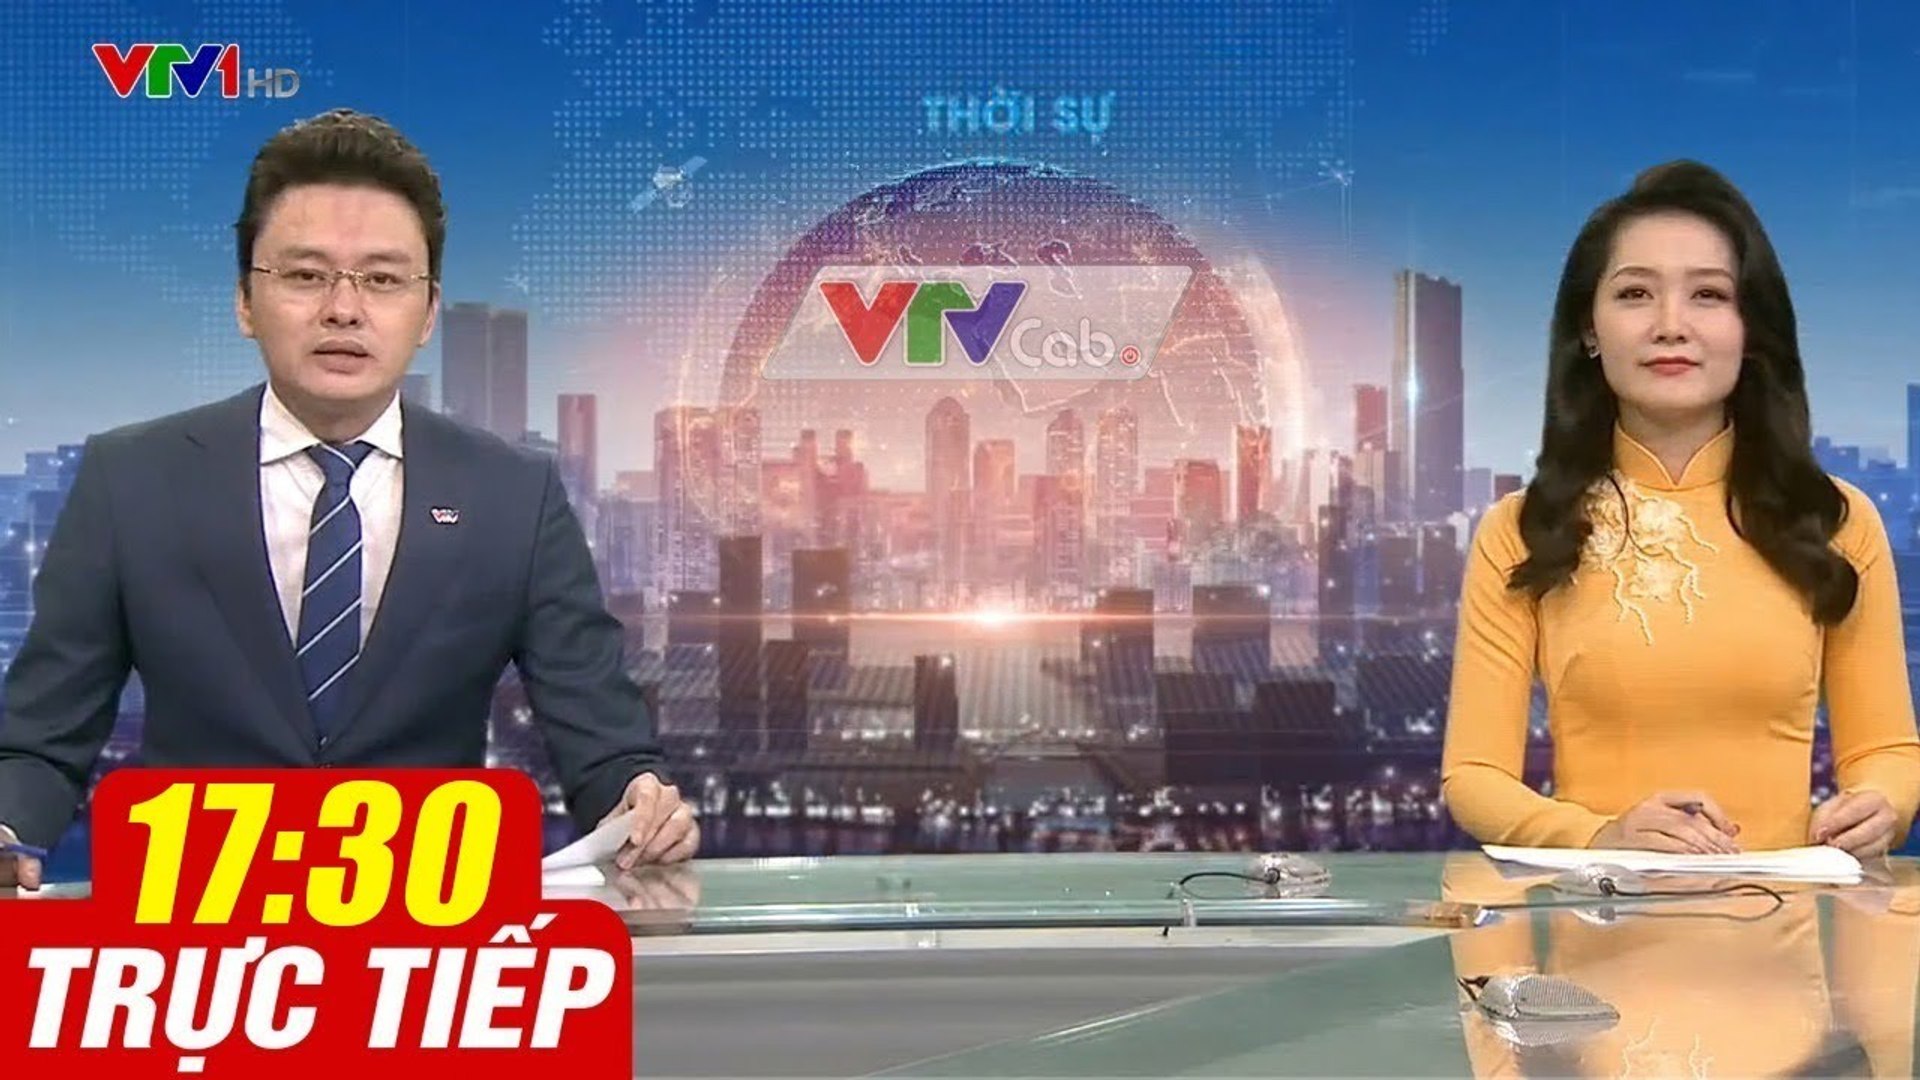 Trực Tiếp VIỆT NAM HÔM NAY 17h30 ngày 23.09.2020  Tin tức thời sự VTV1 mới nhất hôm nay